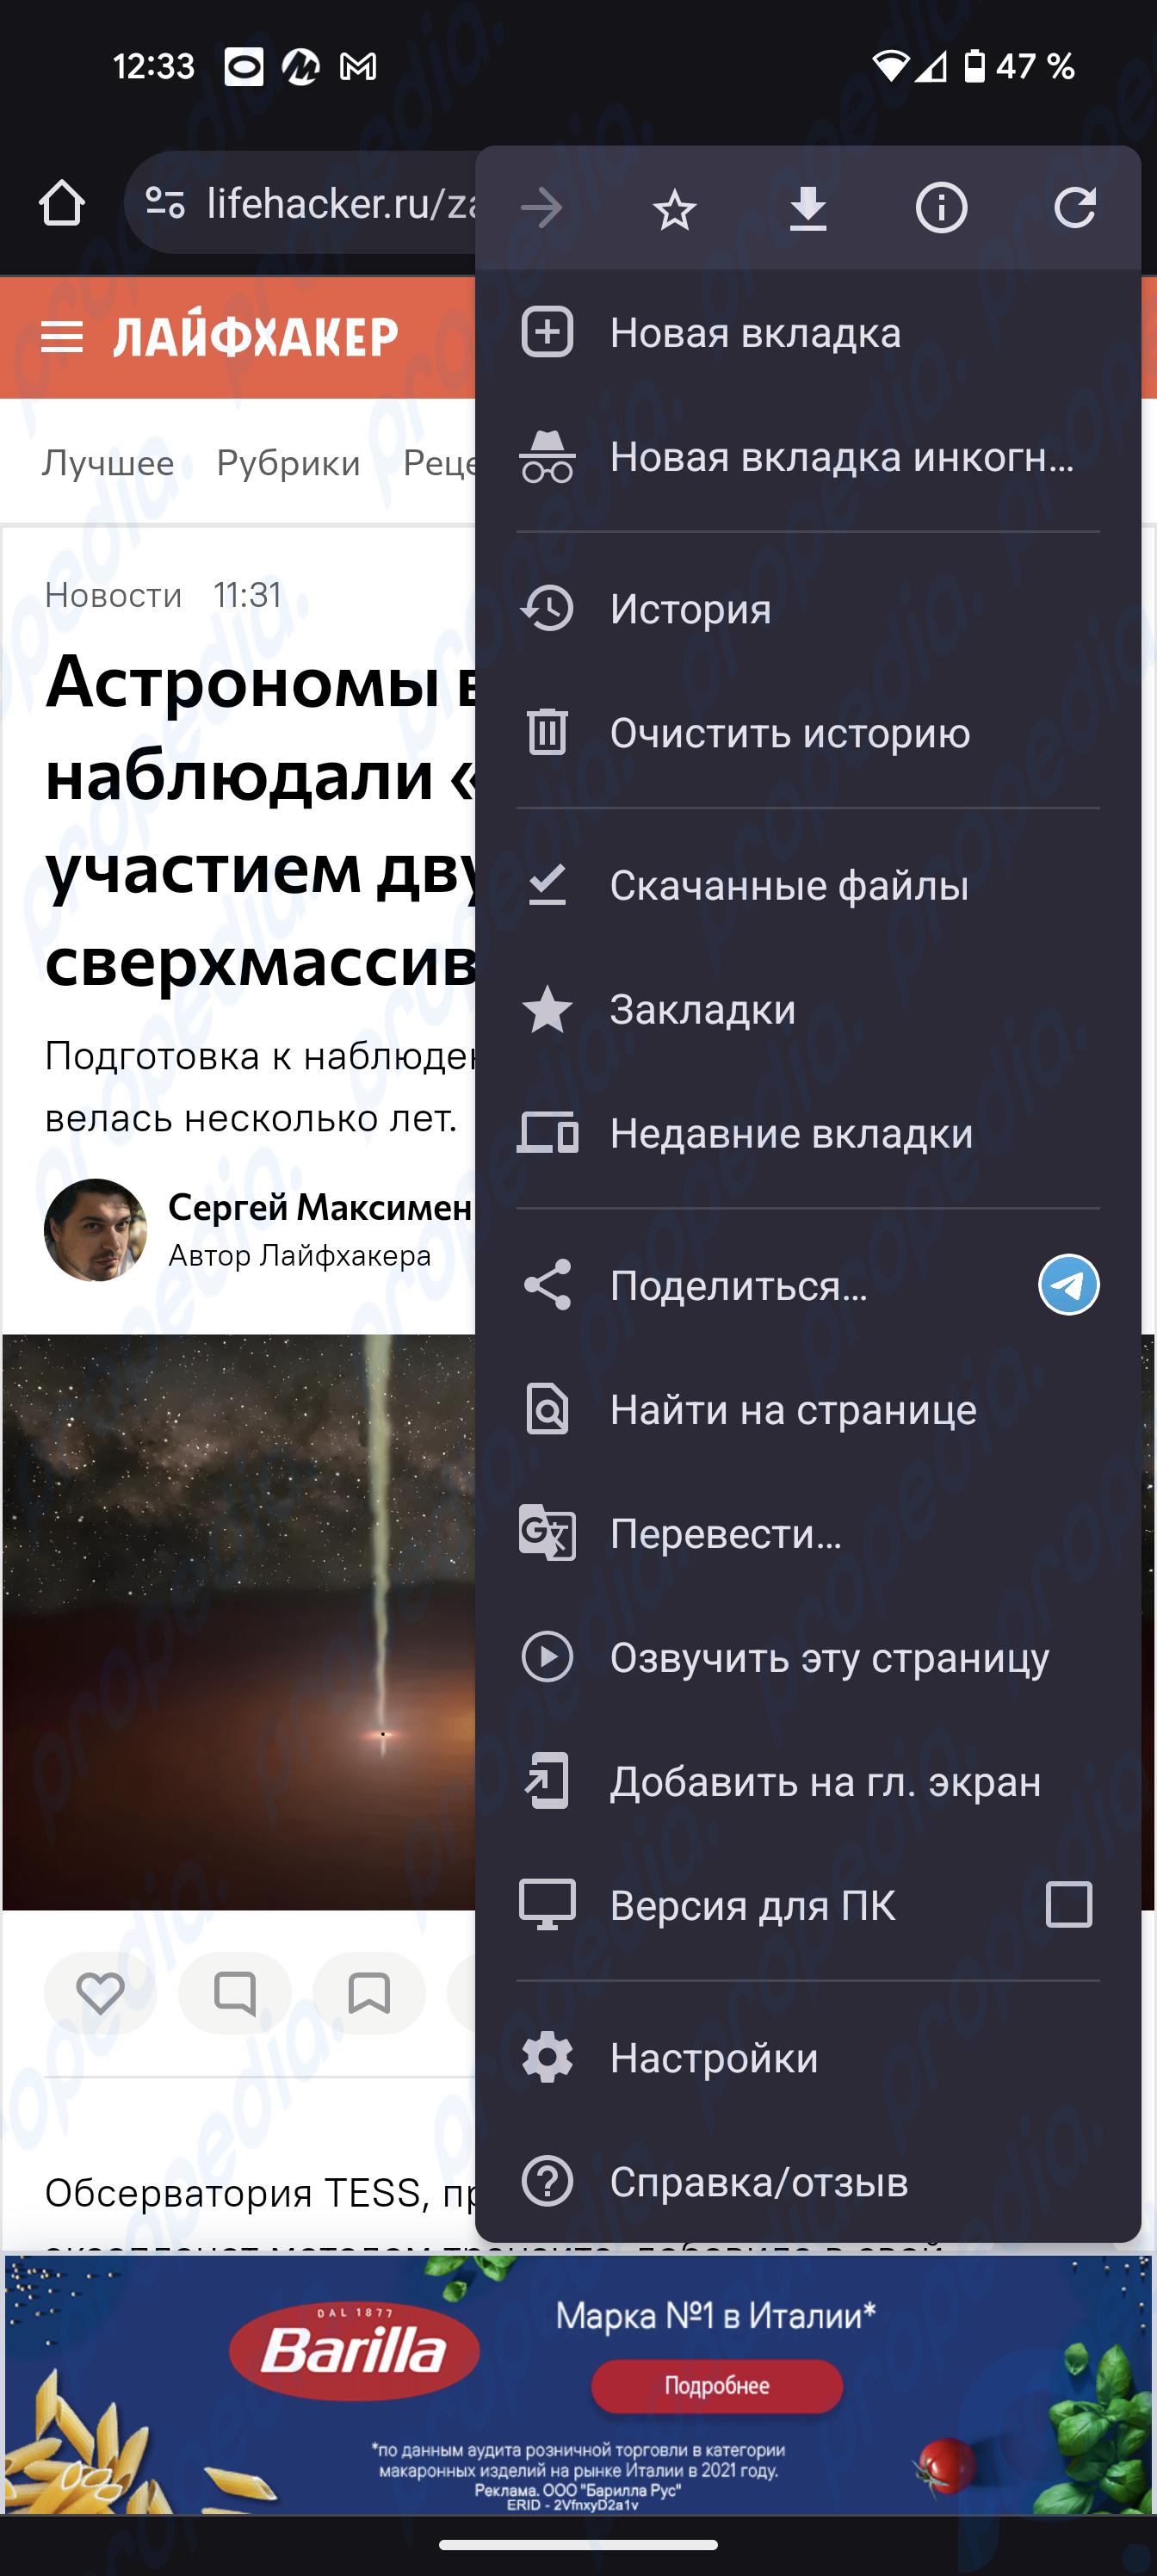 El navegador Chrome en Android ha aprendido a leer el contenido de las páginas web en ruso